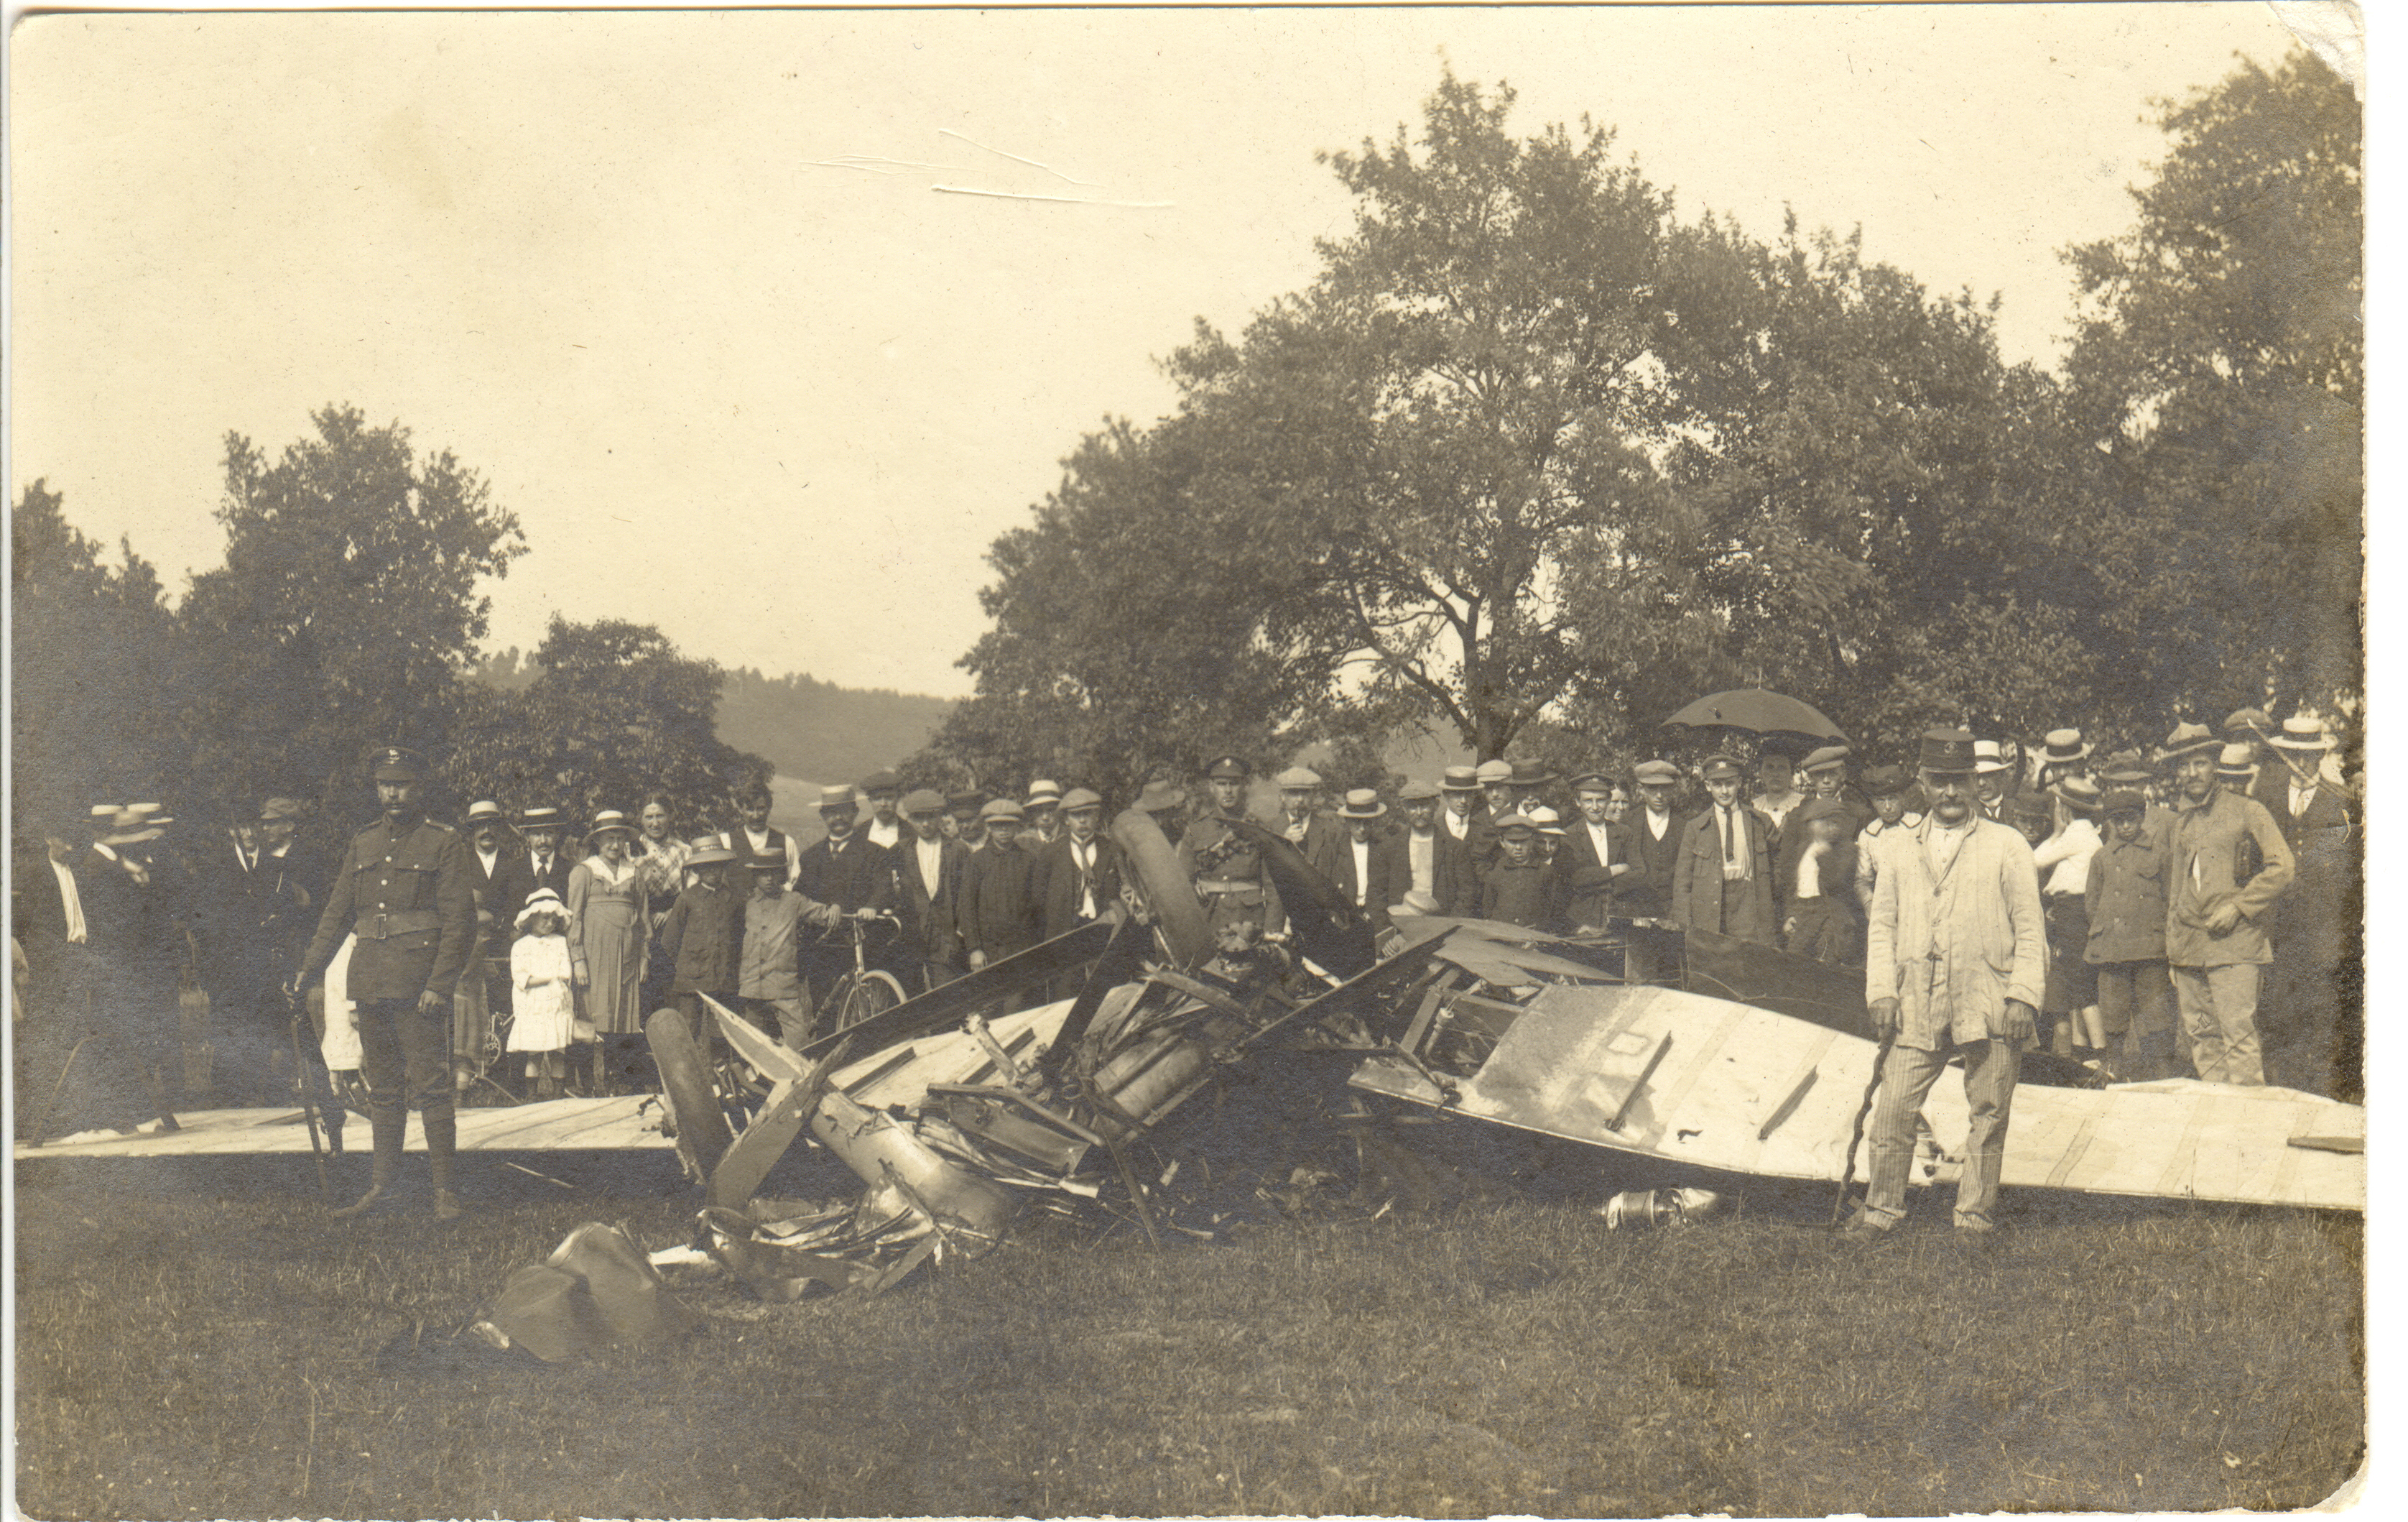 Belgique, Soye (Jodion) près de Franière (Floreffe) - Chute d'un avion du service postal « Cologne - Folkestone » le 8 juin 1919